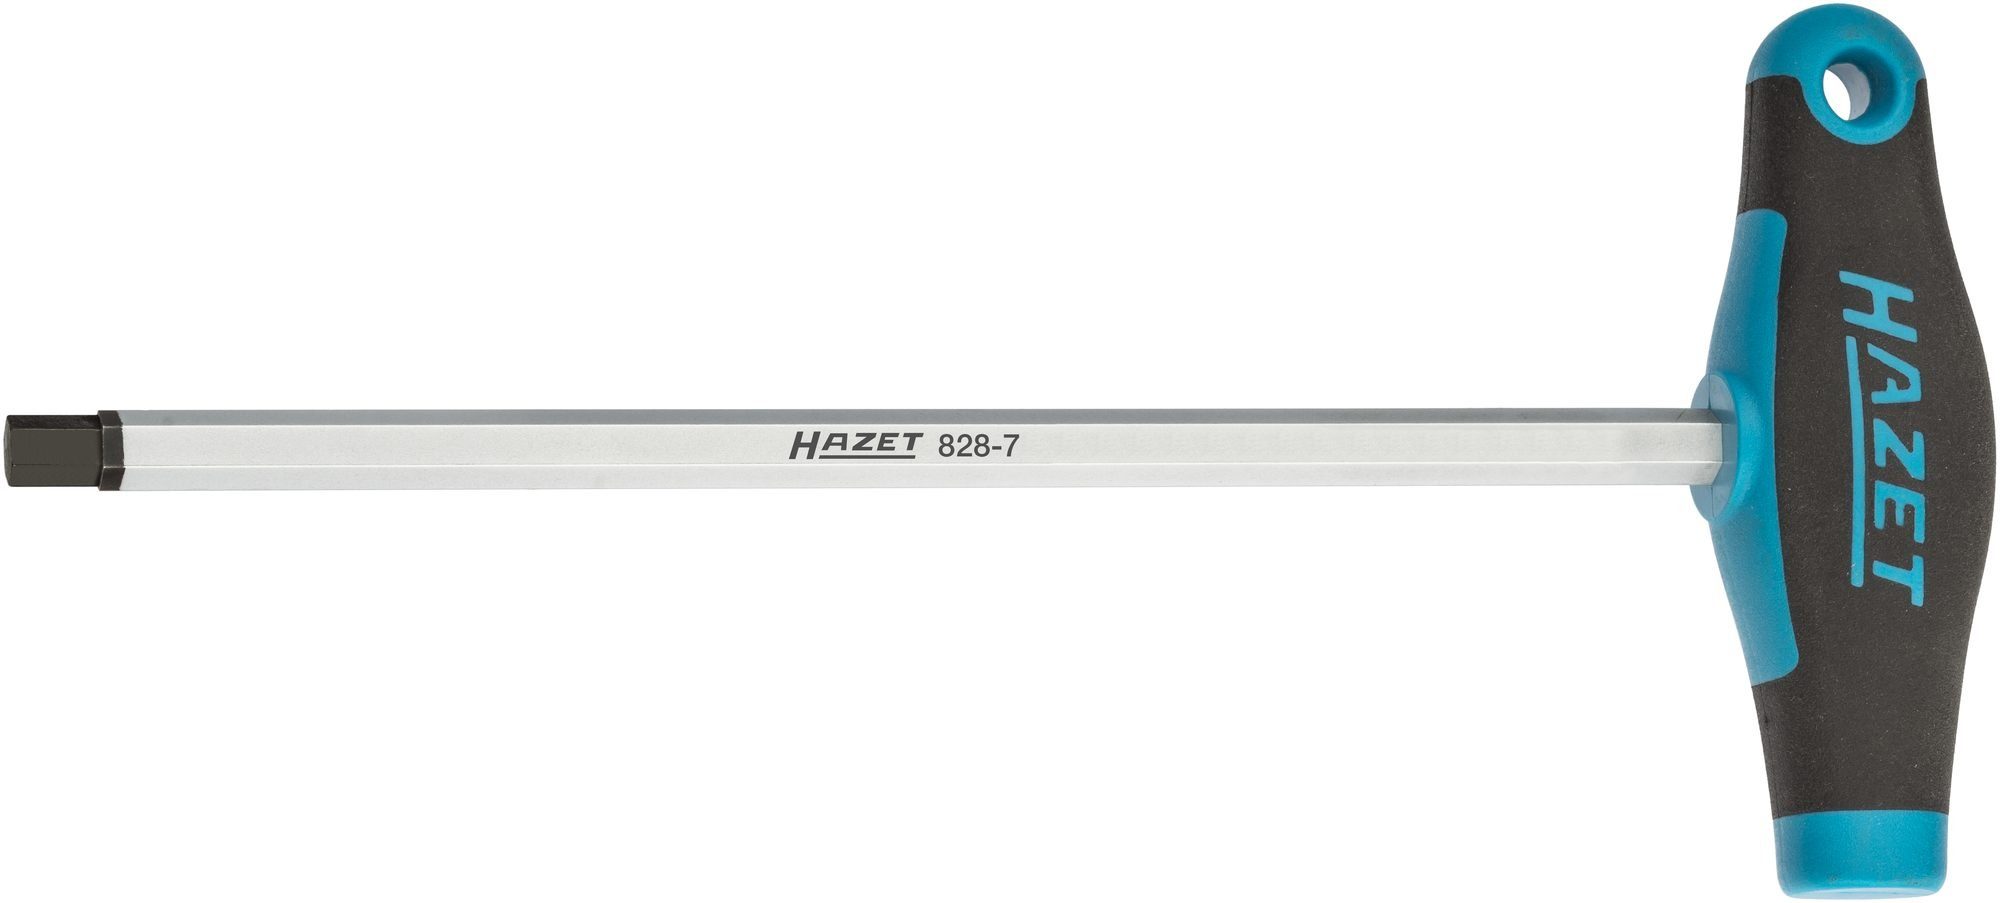 828-7 Scheinwerfer-Einstellwerkzeug, HAZET FORD HAZET Schraubendreher